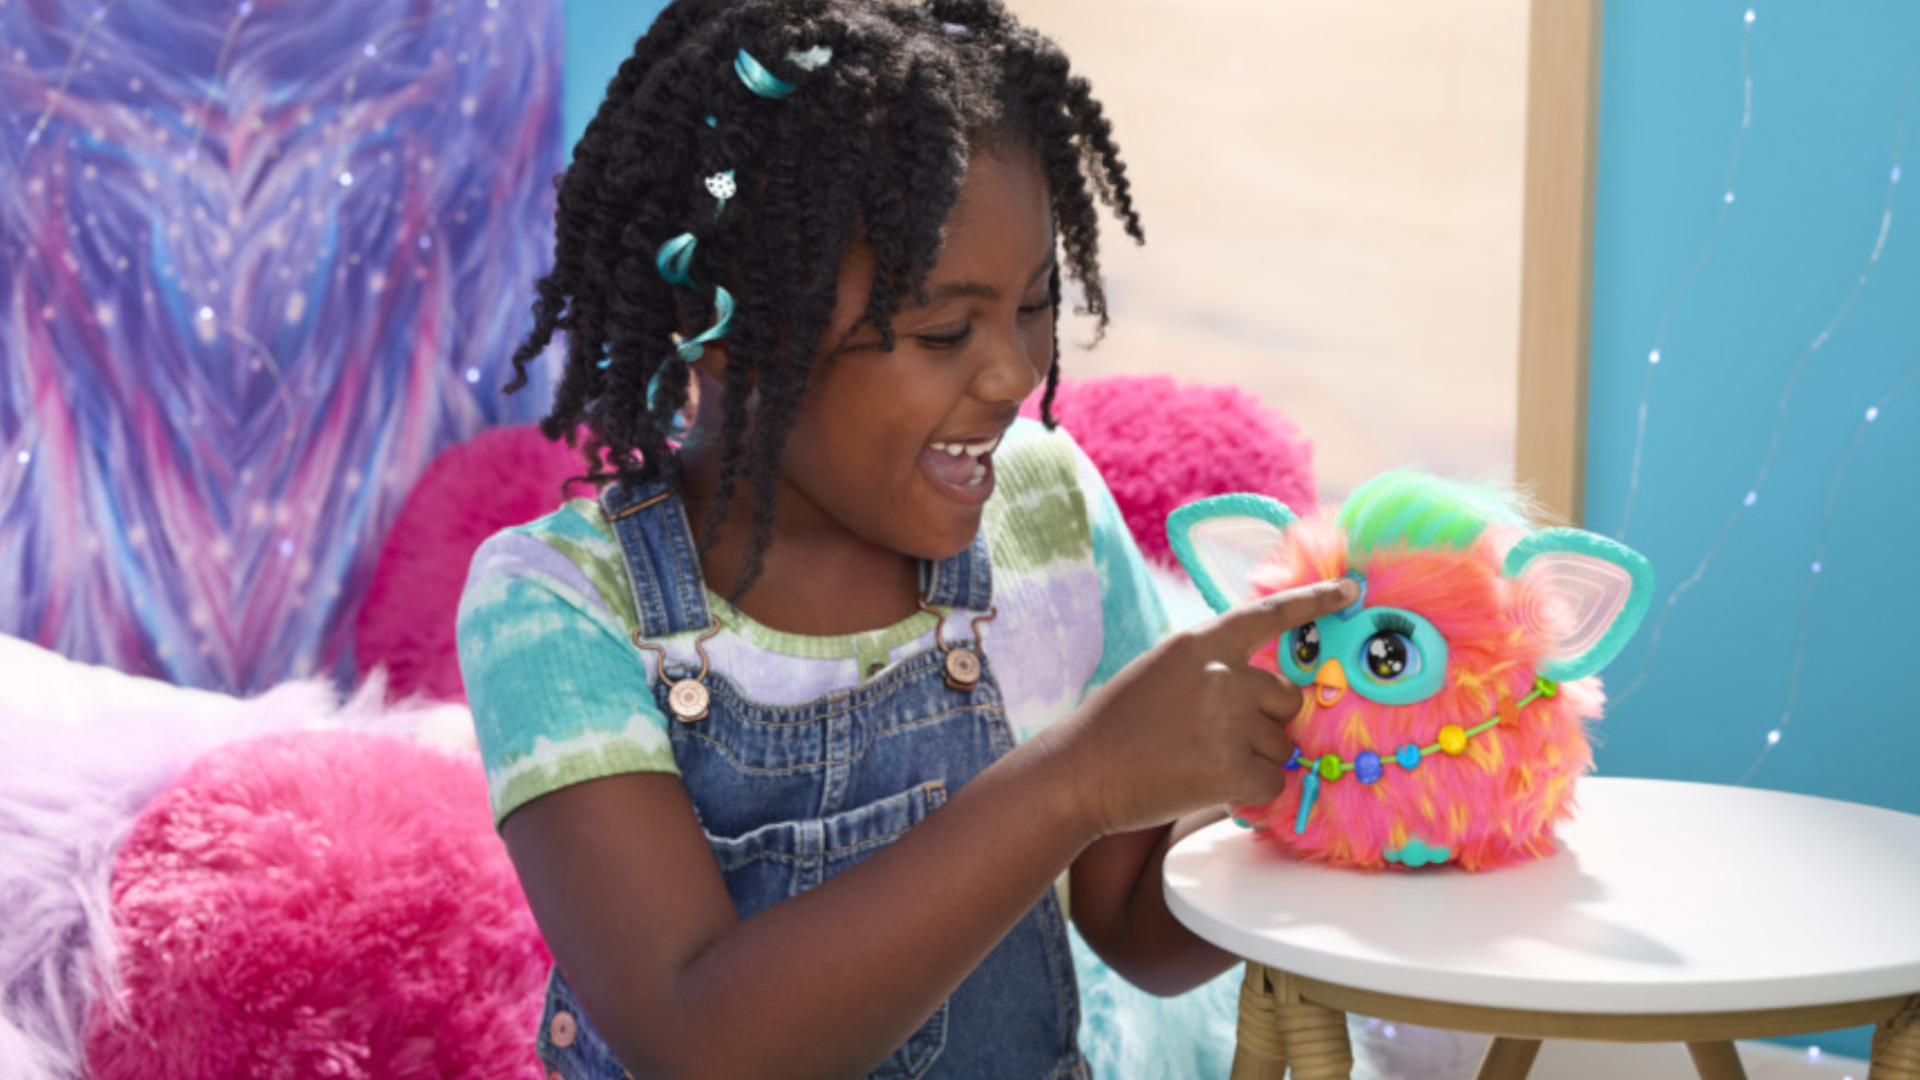 Ein kleines Mädchen drückt den herzförmigen Knopf an einem Furby-Spielzeug